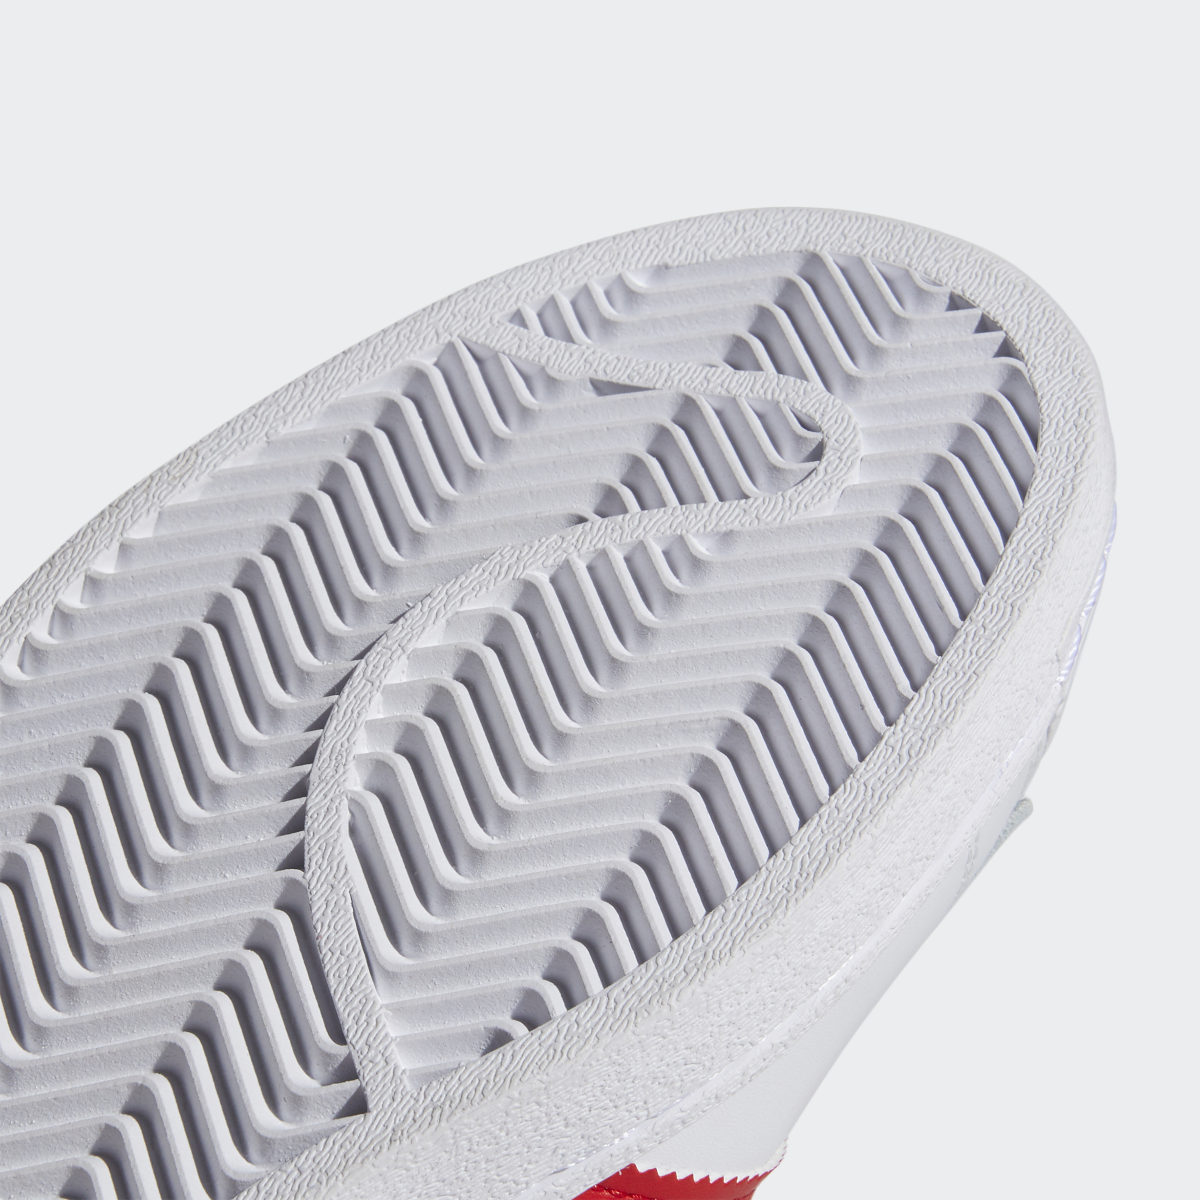 Adidas Superstar Ayakkabı. 10